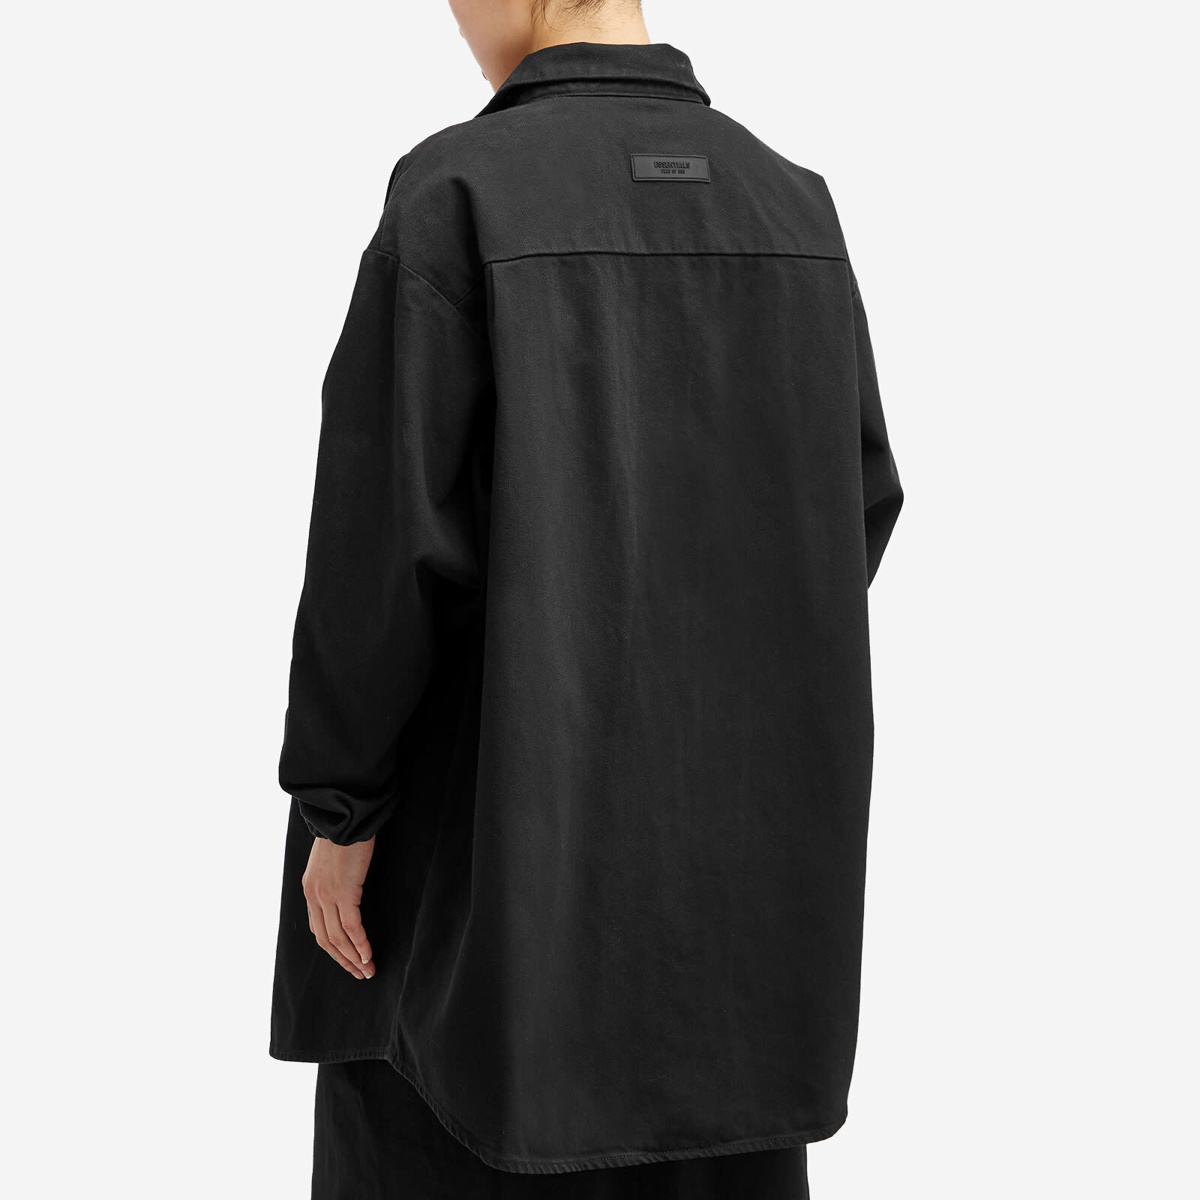 Black Denim Shirt by Fear of God ESSENTIALS on Sale